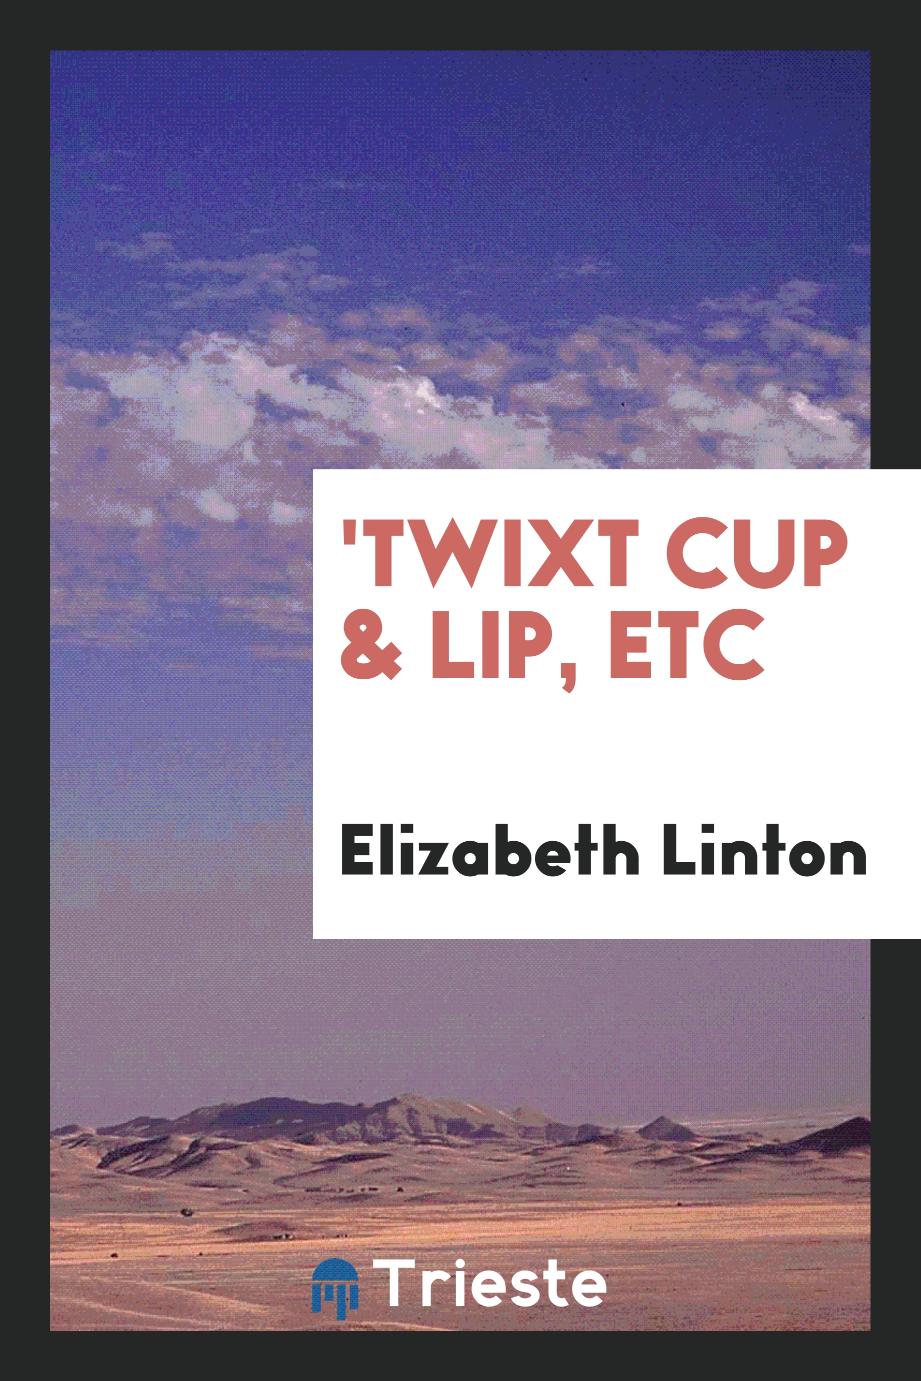 'Twixt Cup & Lip, Etc